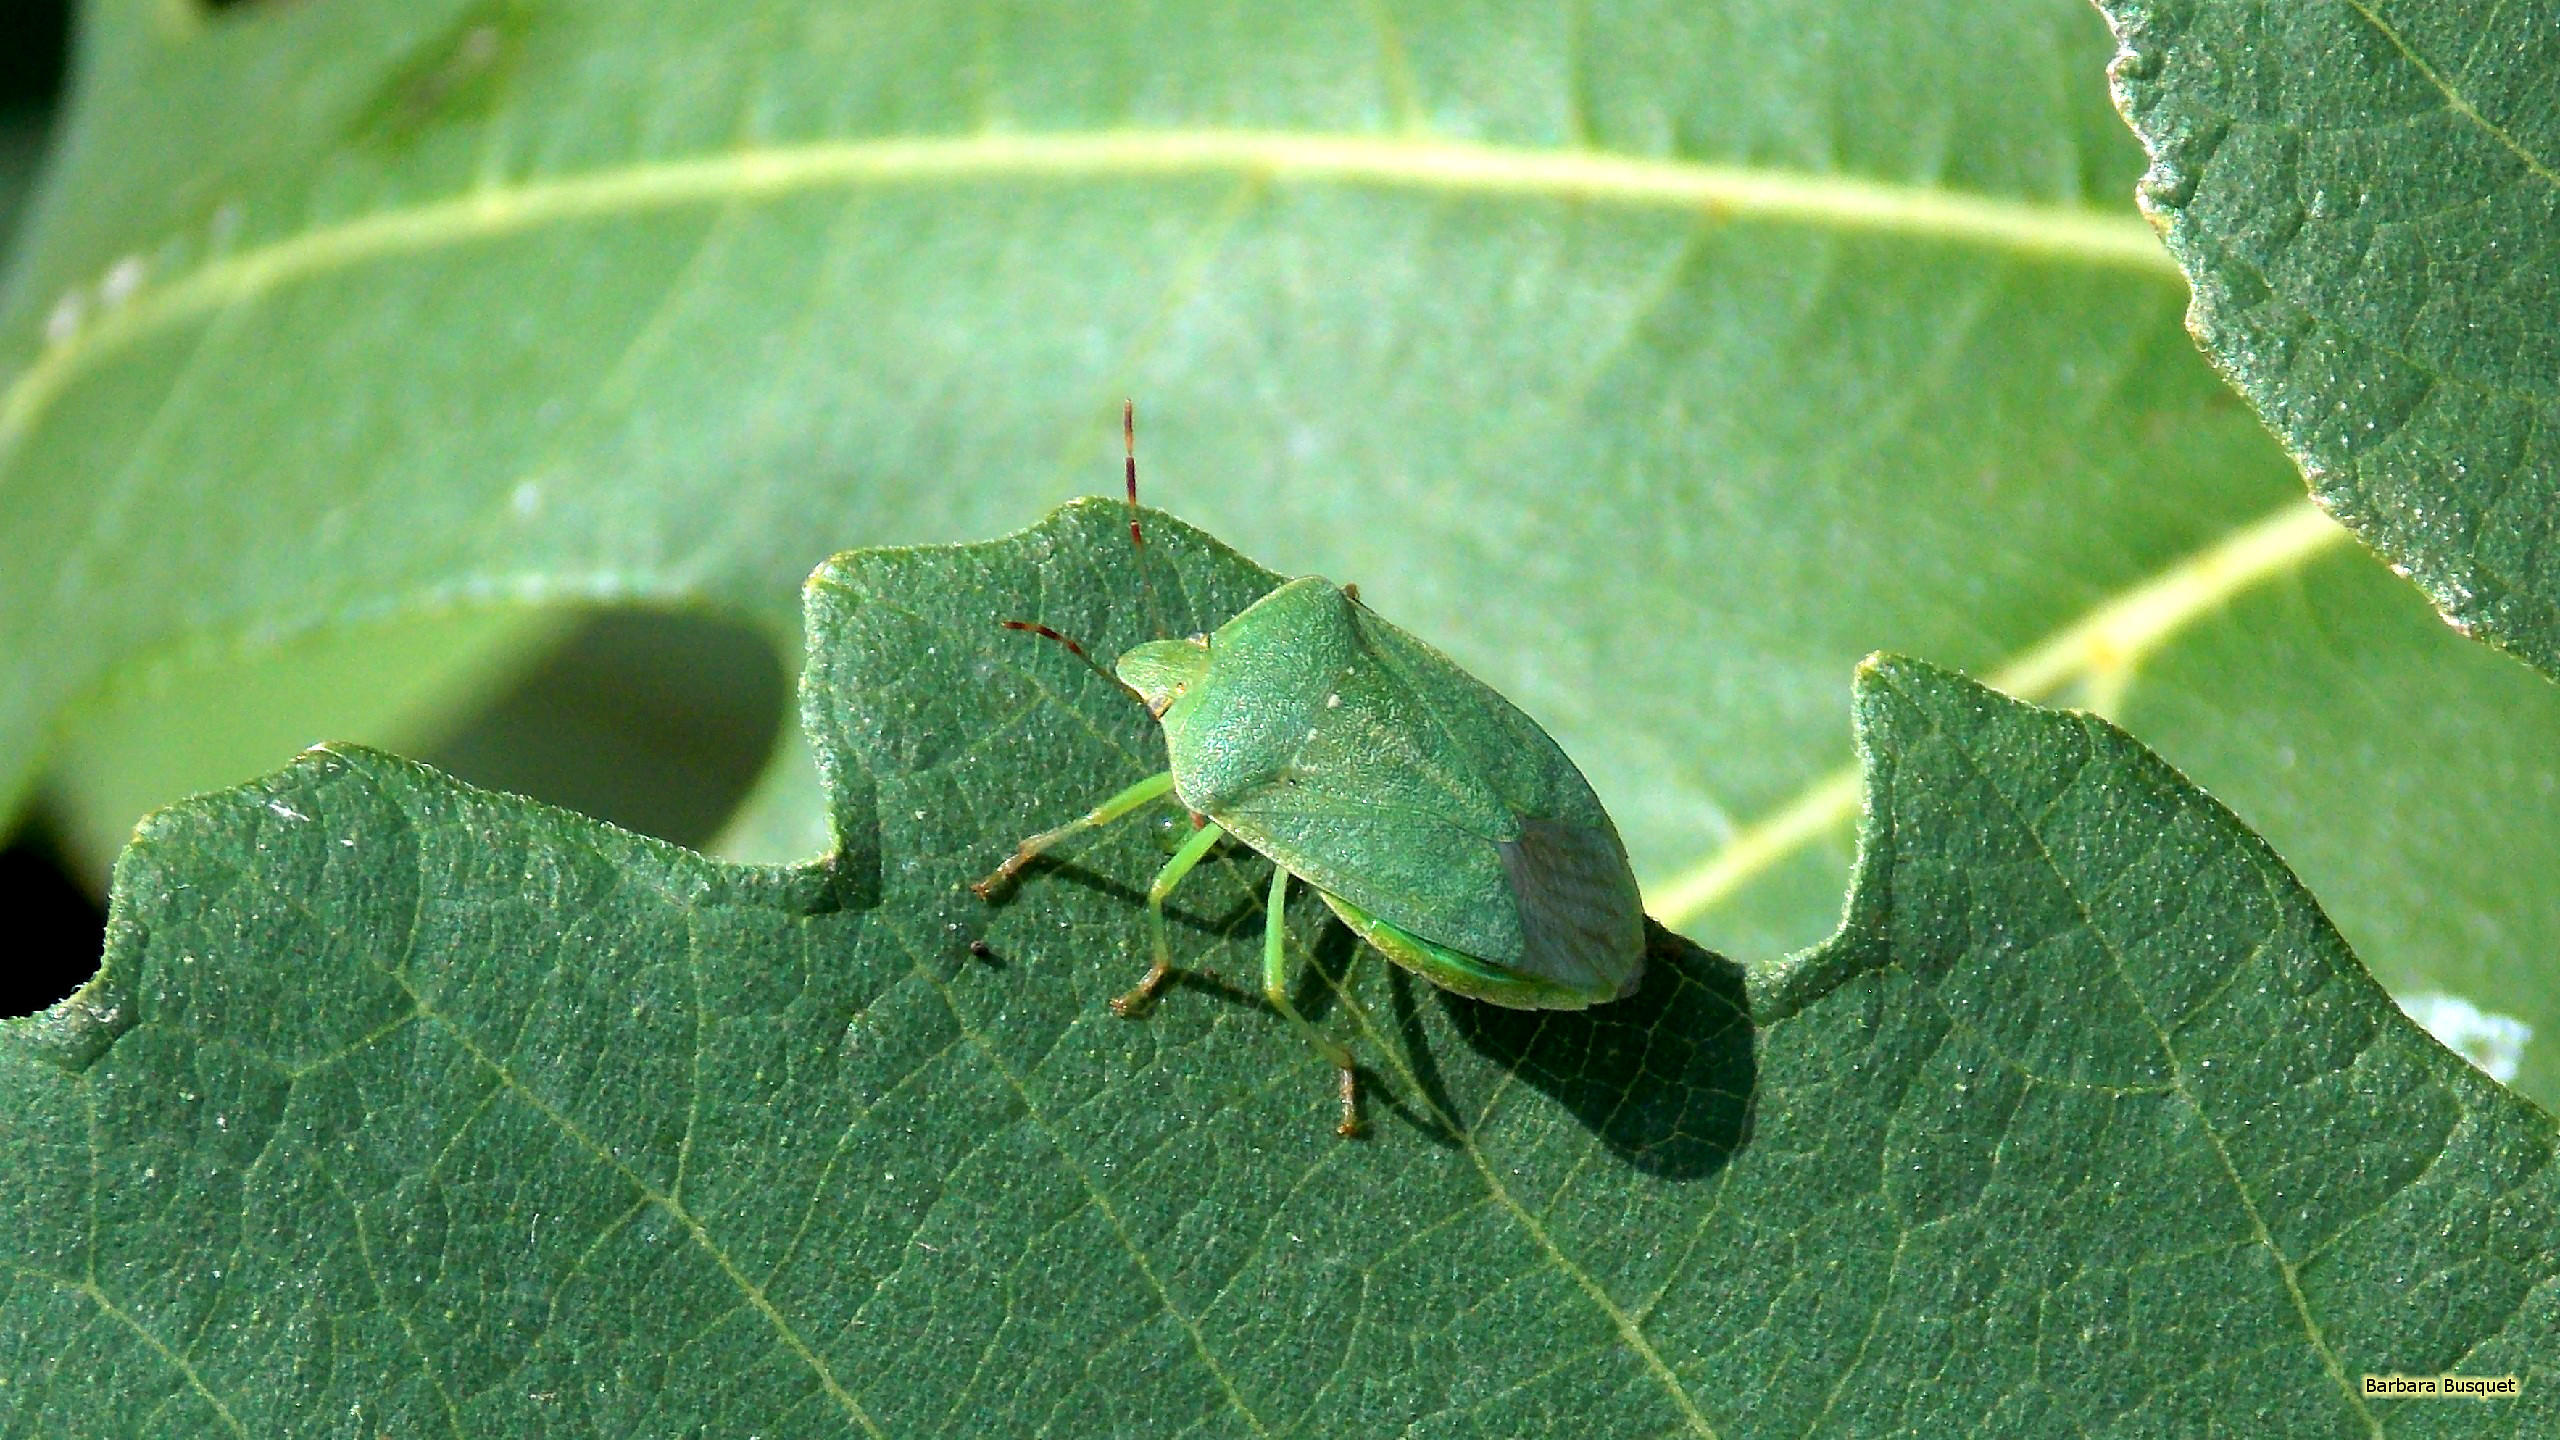 Green shield bug on a leaf HD Wallpaper